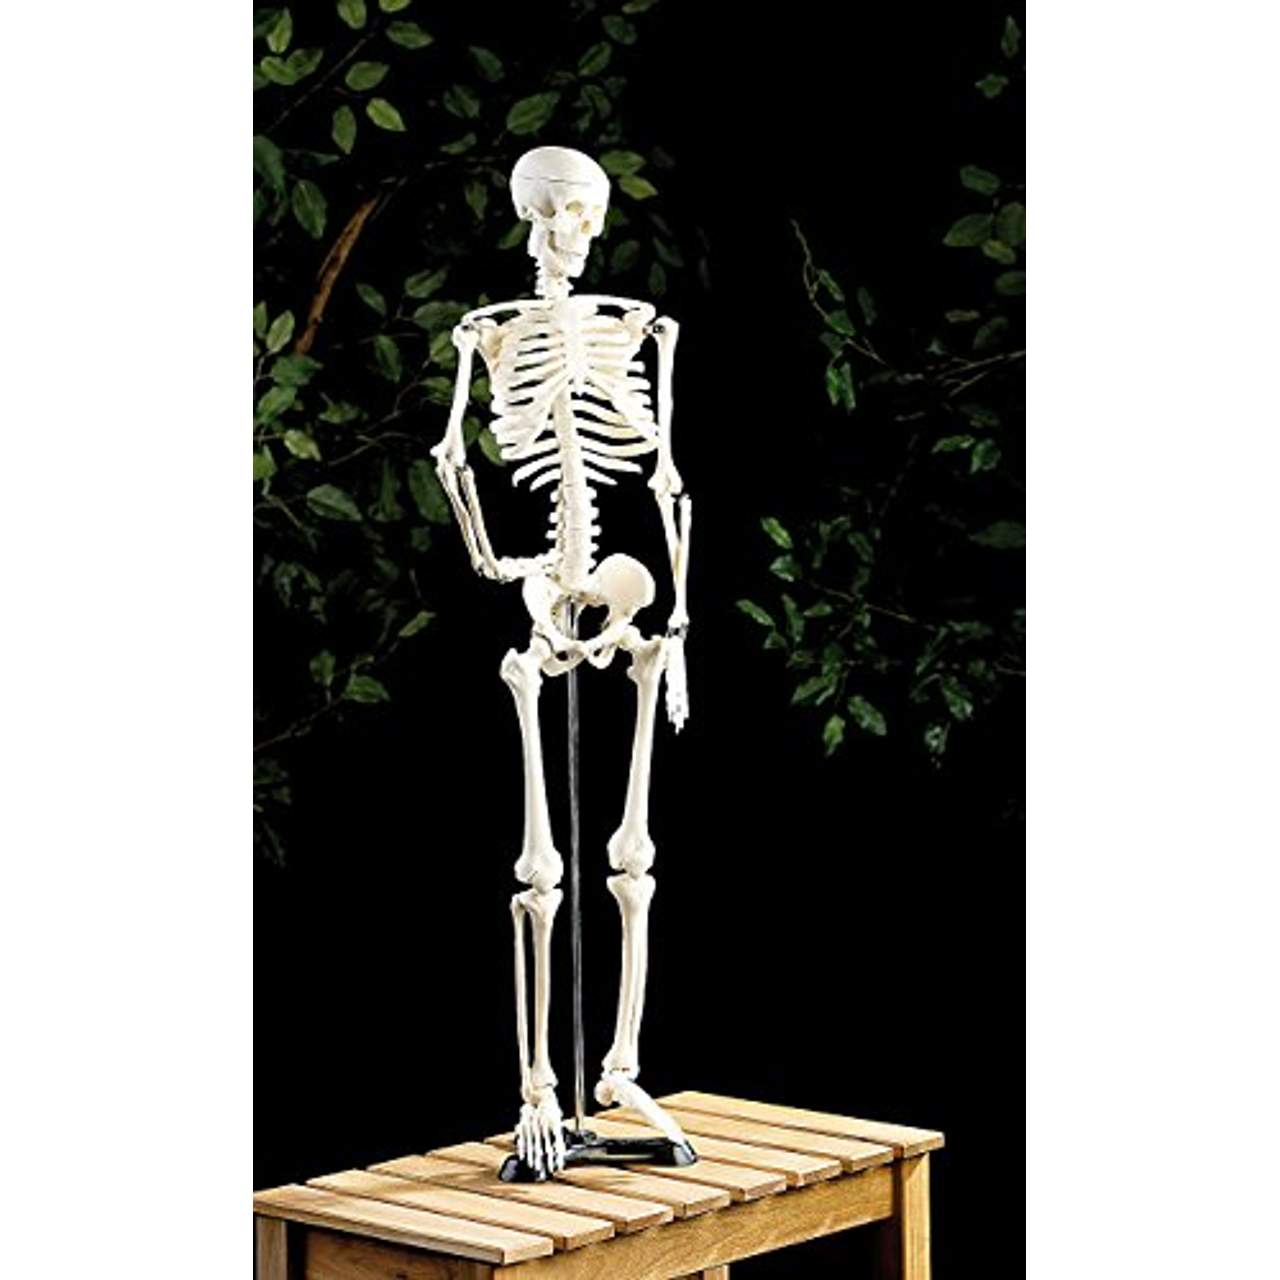 newgen medicals Menschliches Skelett: Original Lehrmittel Anatomie